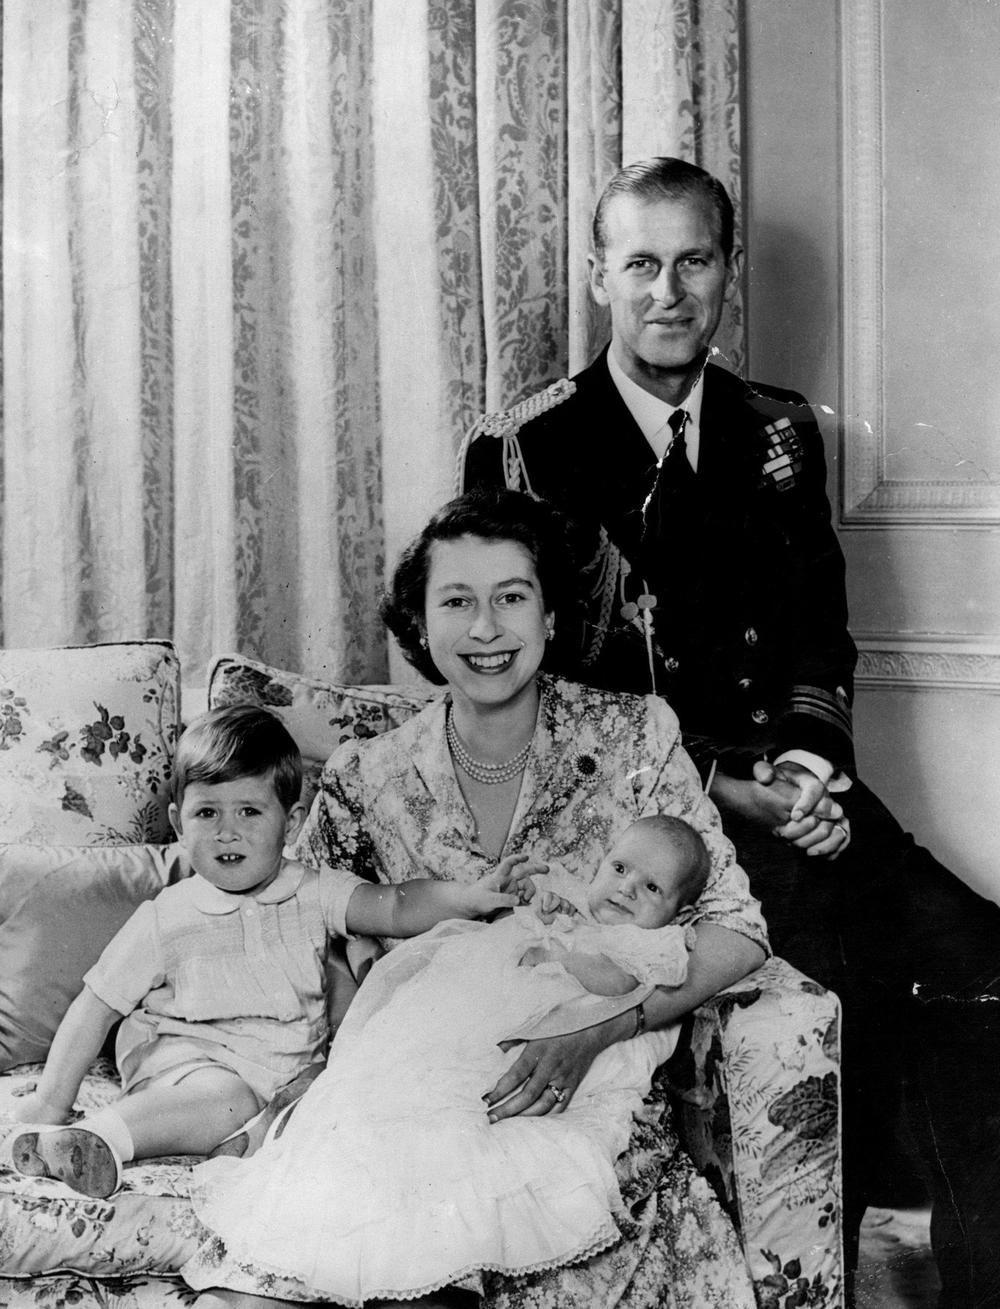 <p>Suprug kraljice Elizabete preminuo je u 100. godini, javljaju britanski mediji</p>